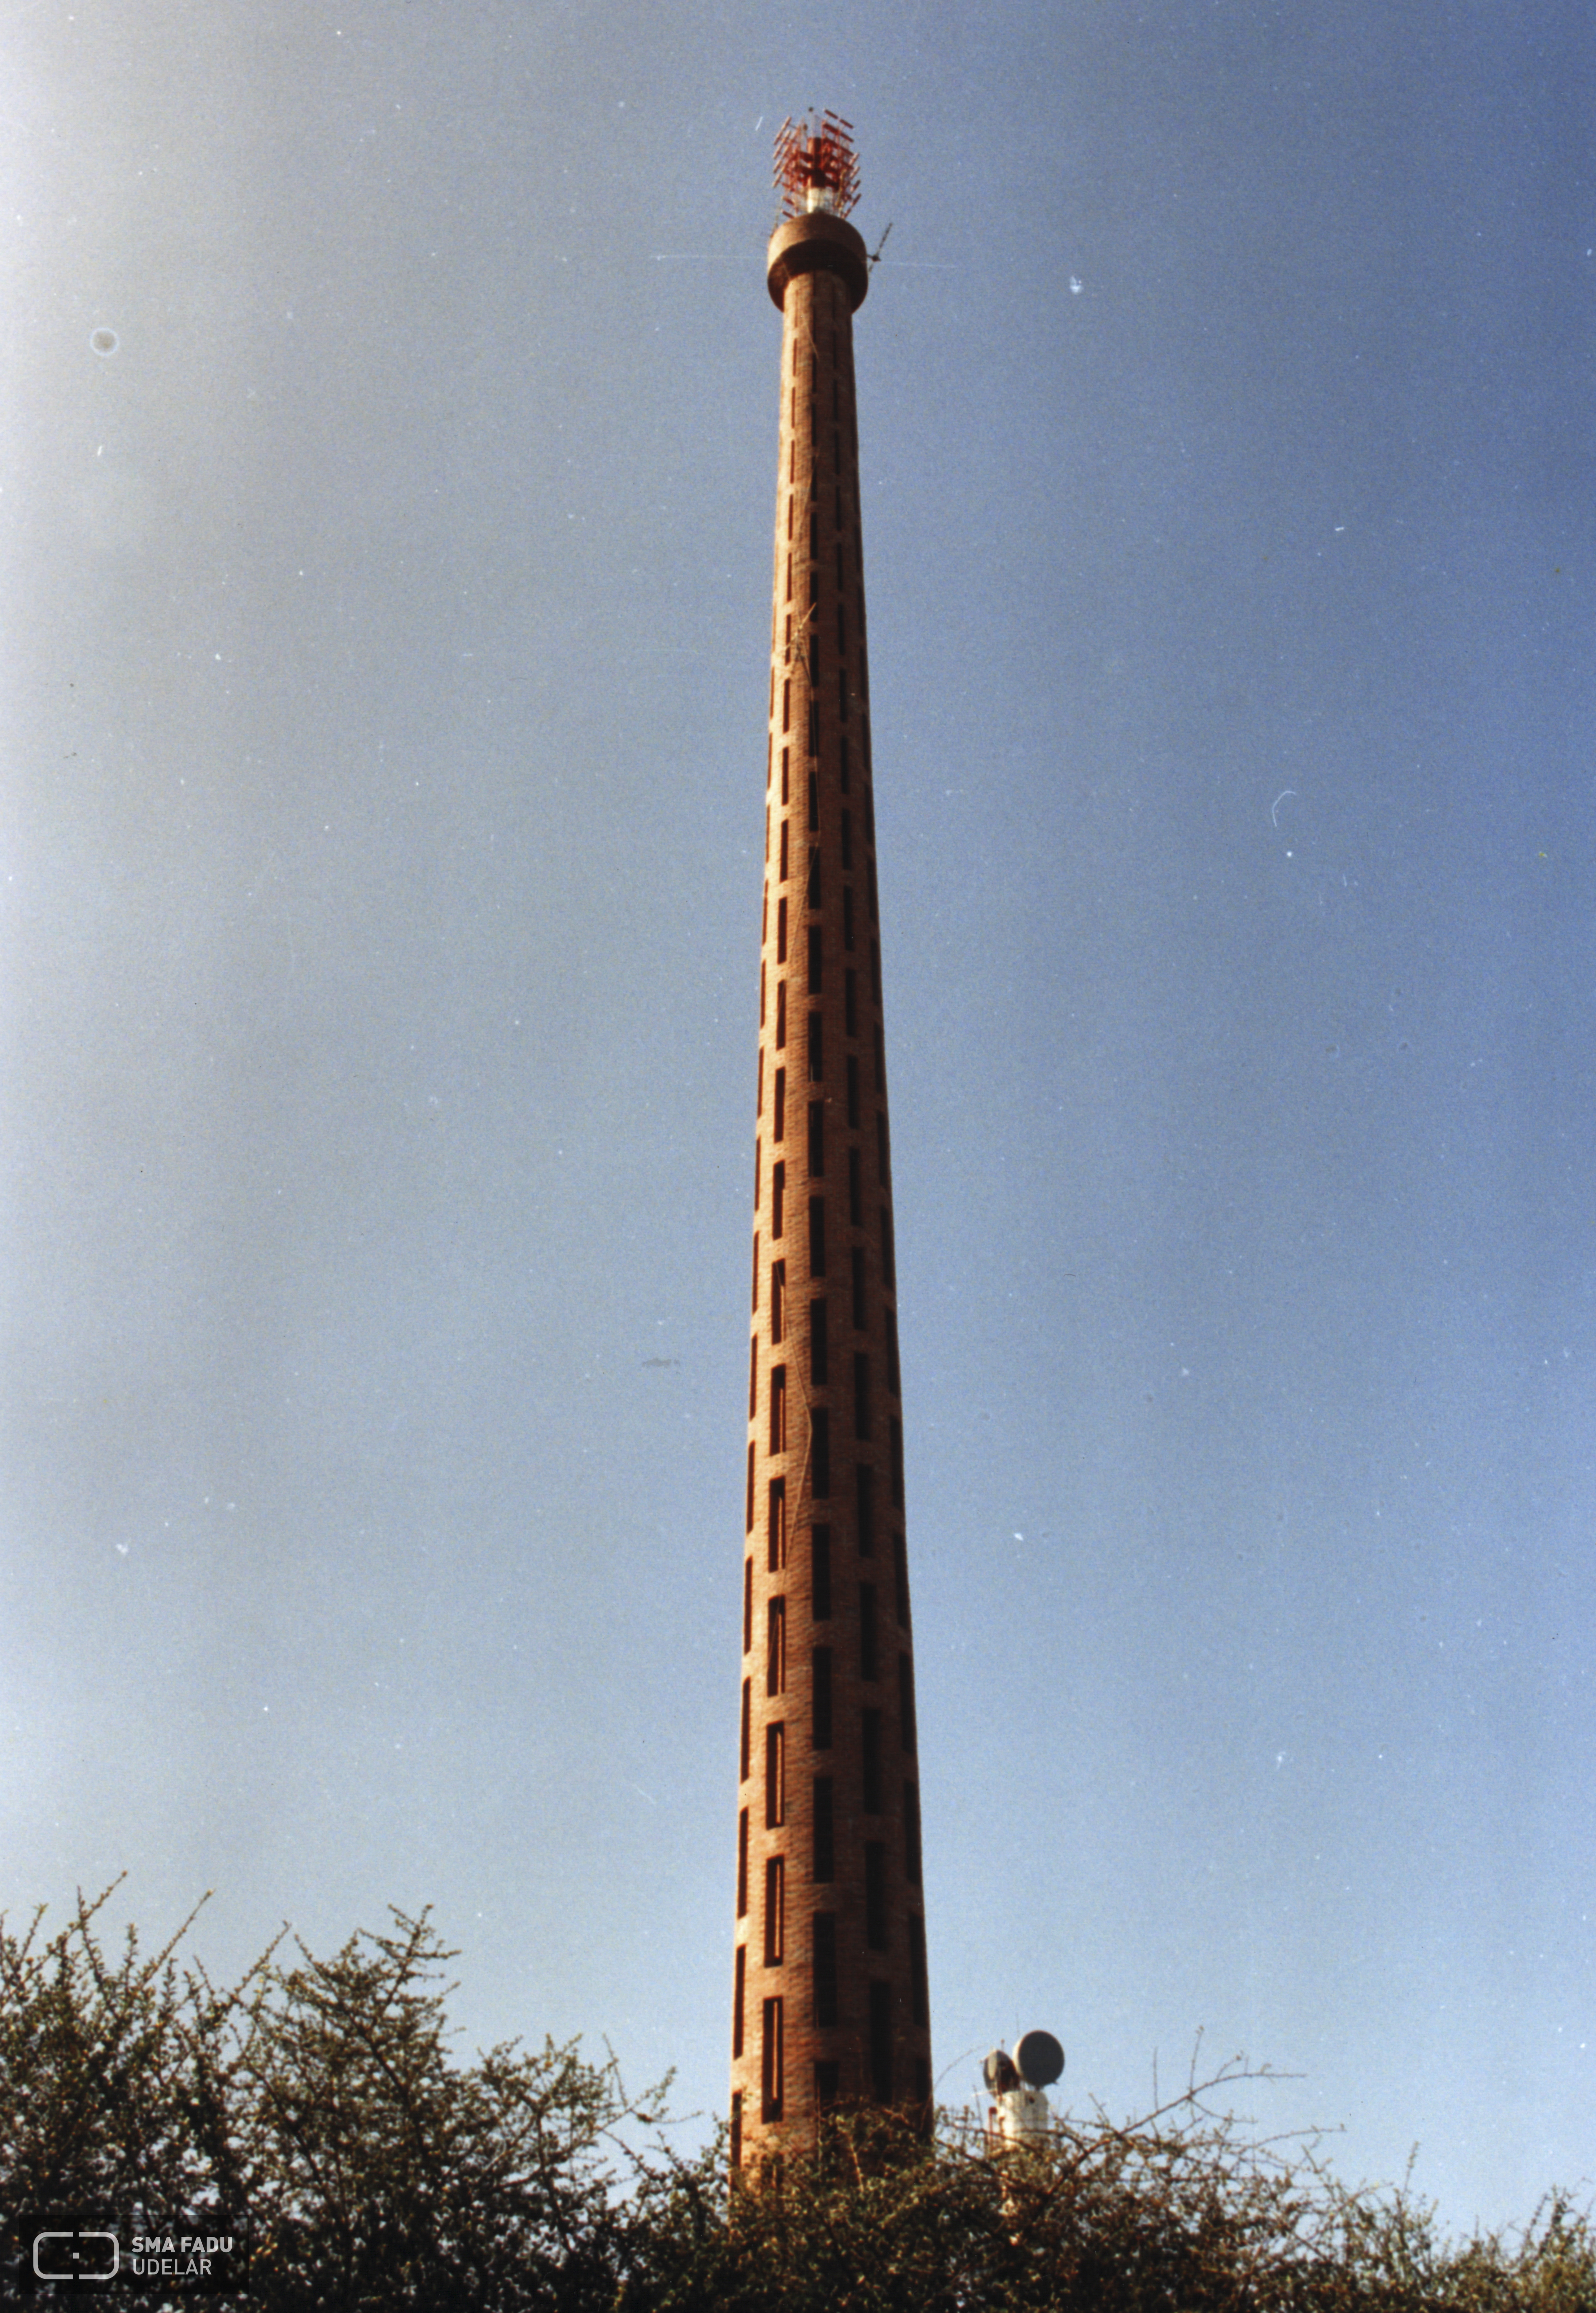 Torre de Telecomunicaciones, Ing. DIESTE Eladio, Maldonado, Uy, Foto original de Estudio Dieste & Montañez